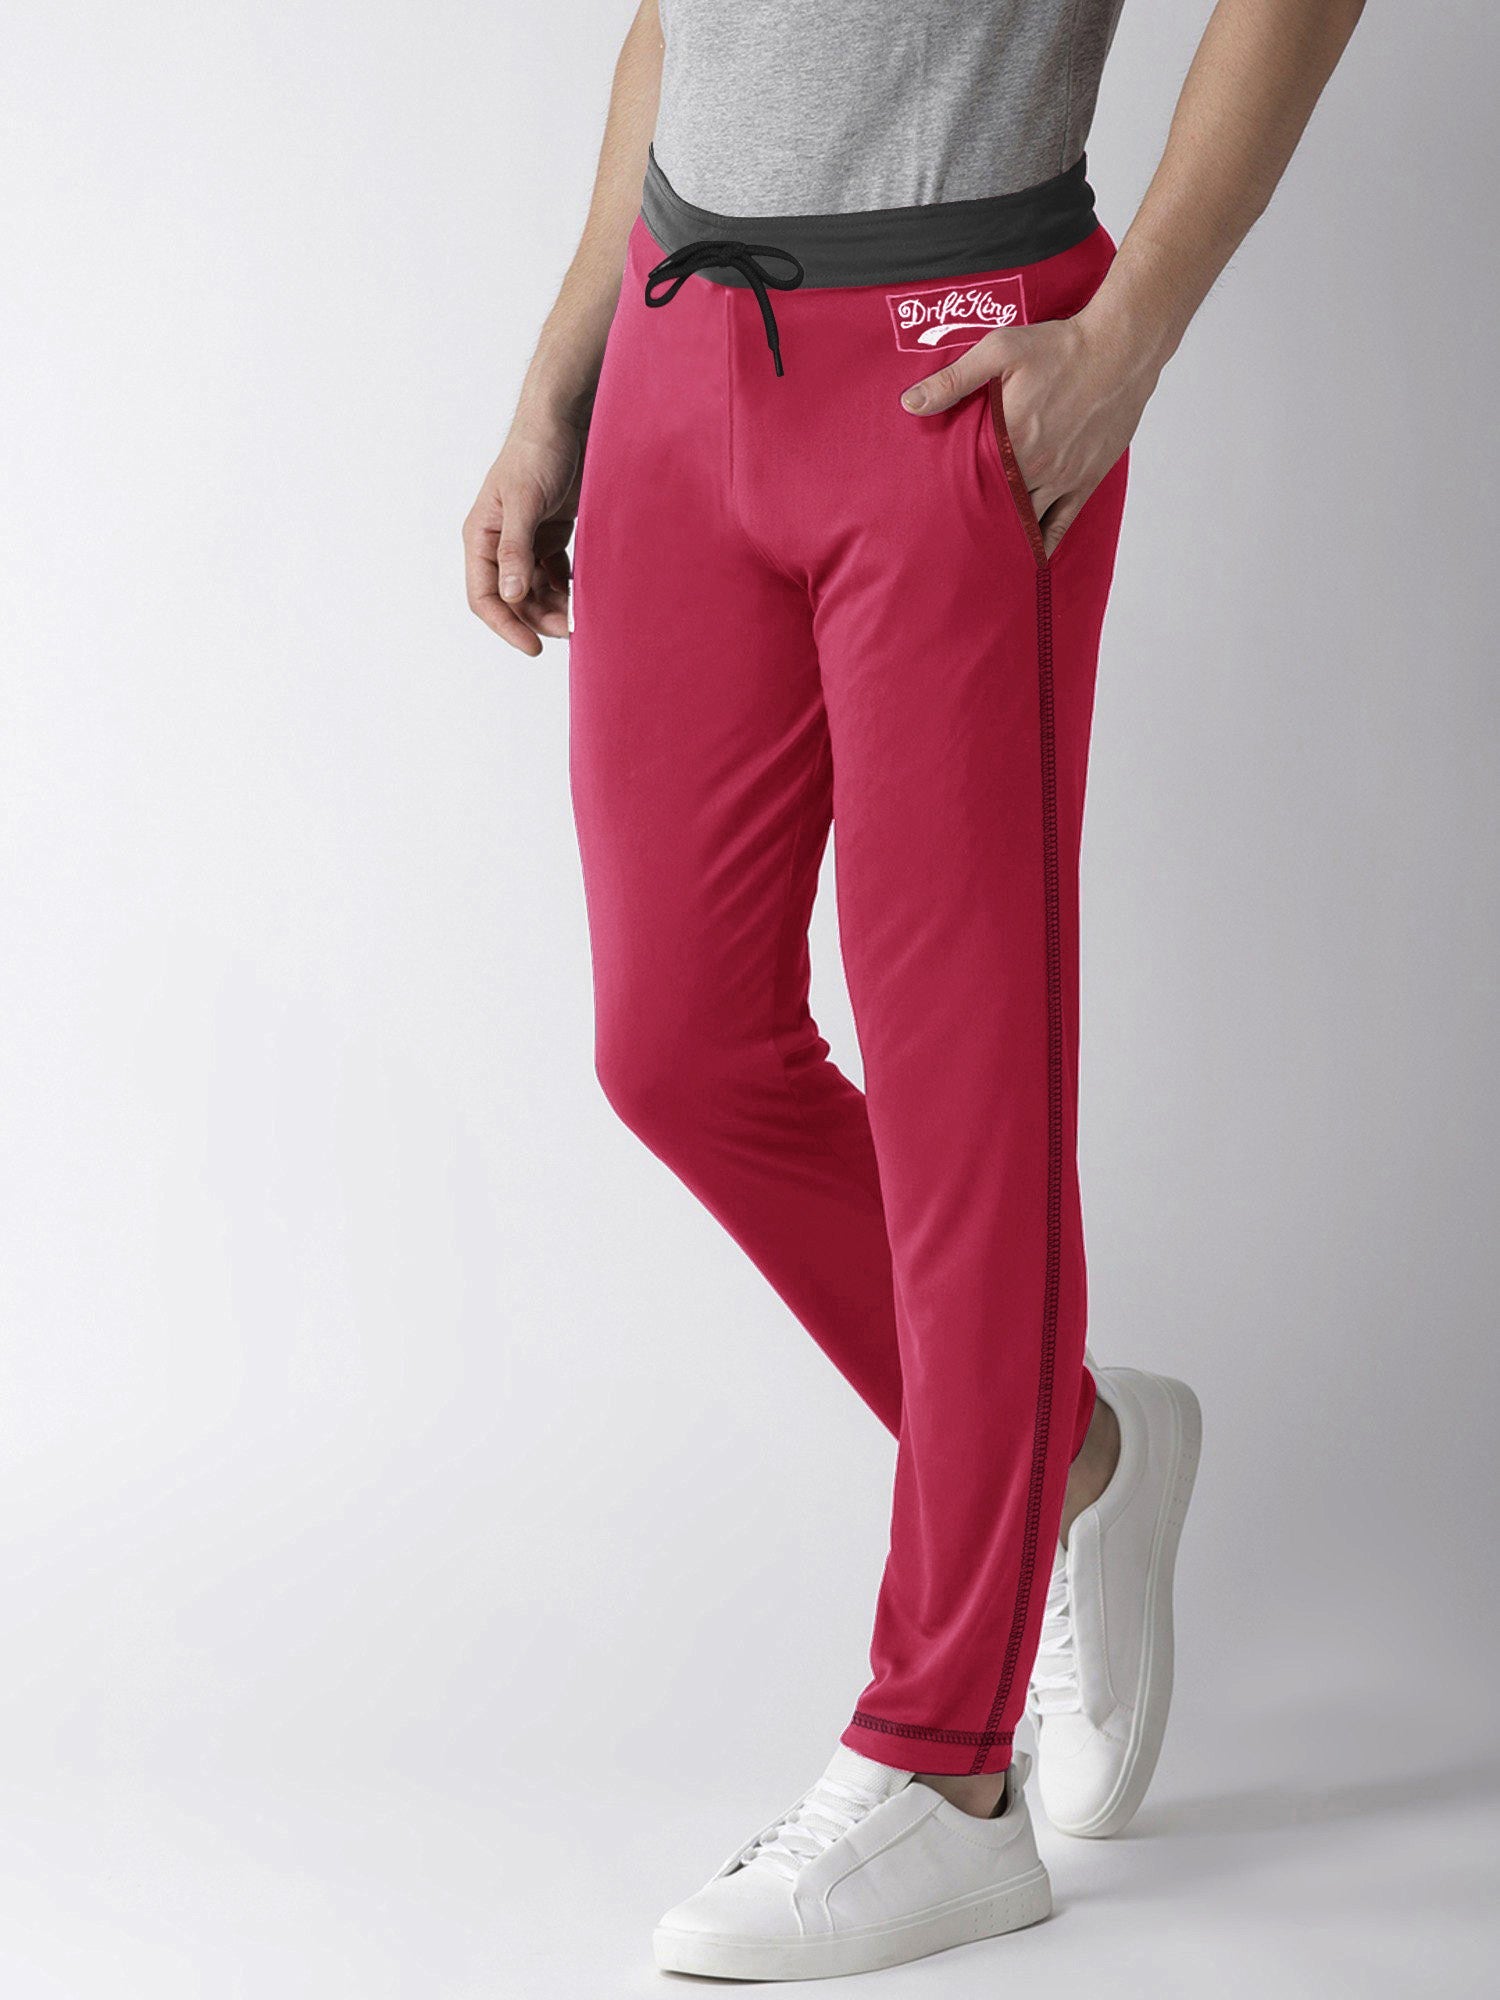 Drift King Regular Fit Fleece Jogger Trouser For Men-Magenta-SP855